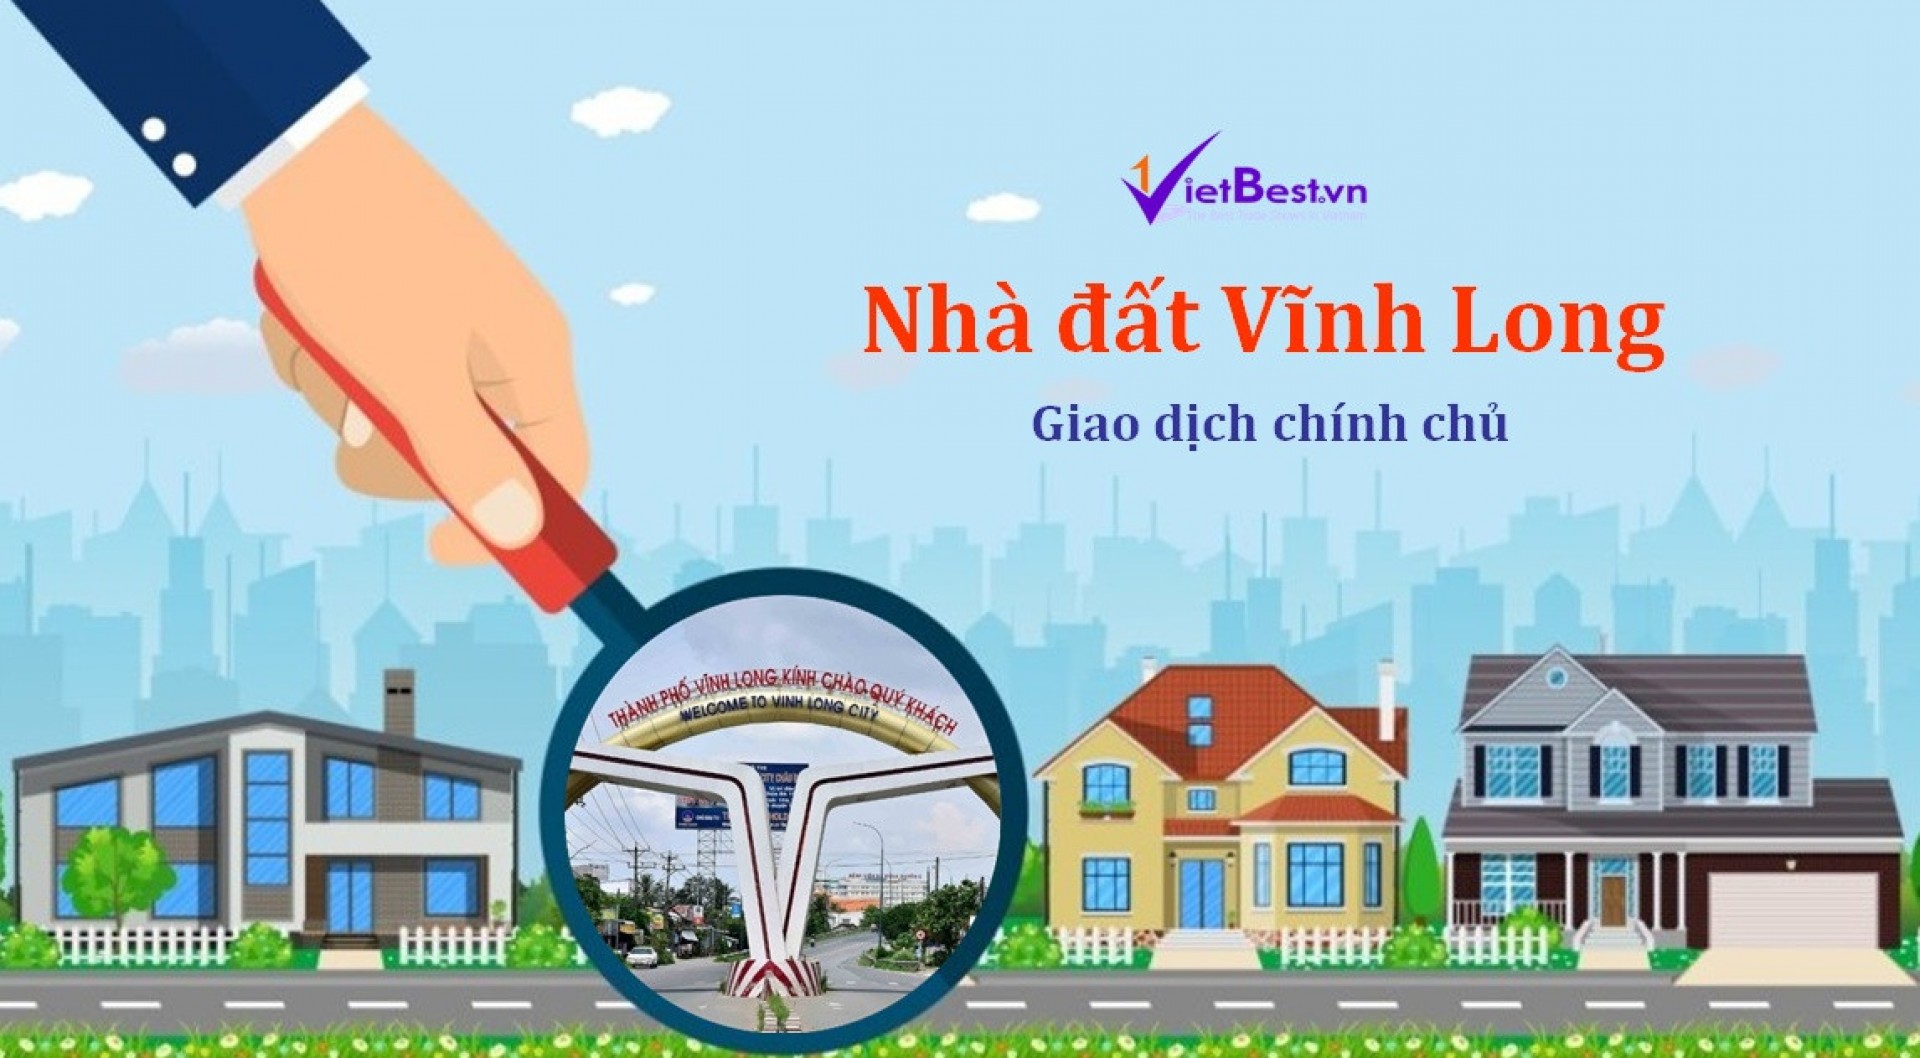 Cần tìm mua gấp Nhà đất tại Vĩnh Long trong tháng 04/2022